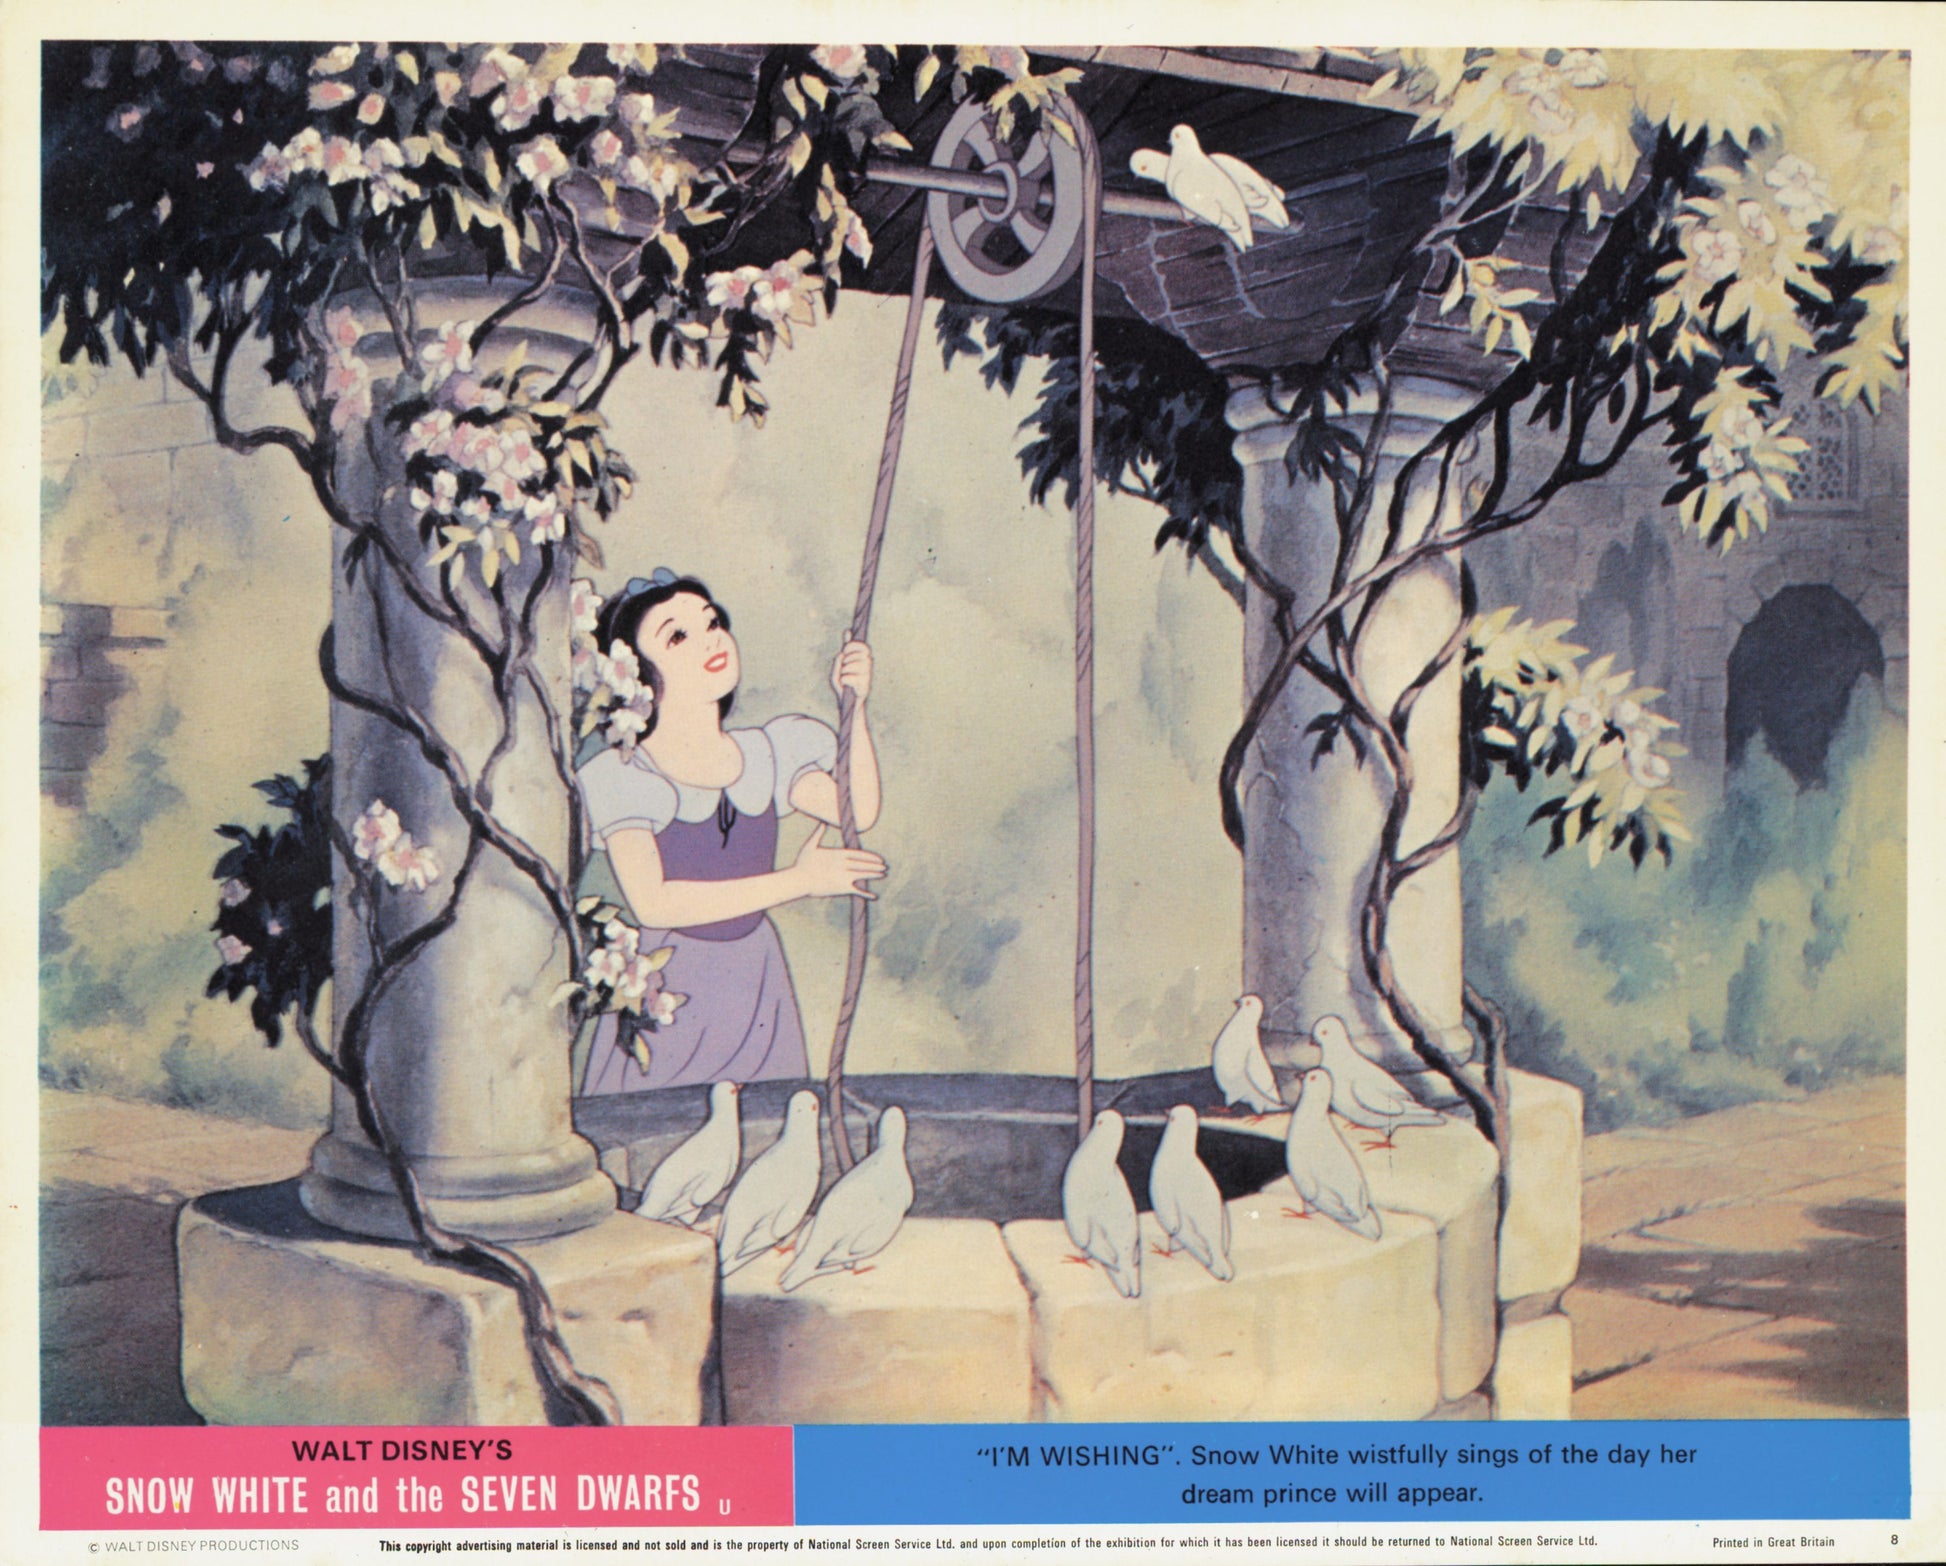 Snow White and the Seven Dwarfs (1937) Studio Photos (6 vintage prints) Animation Disney Film Movies Walt Disney